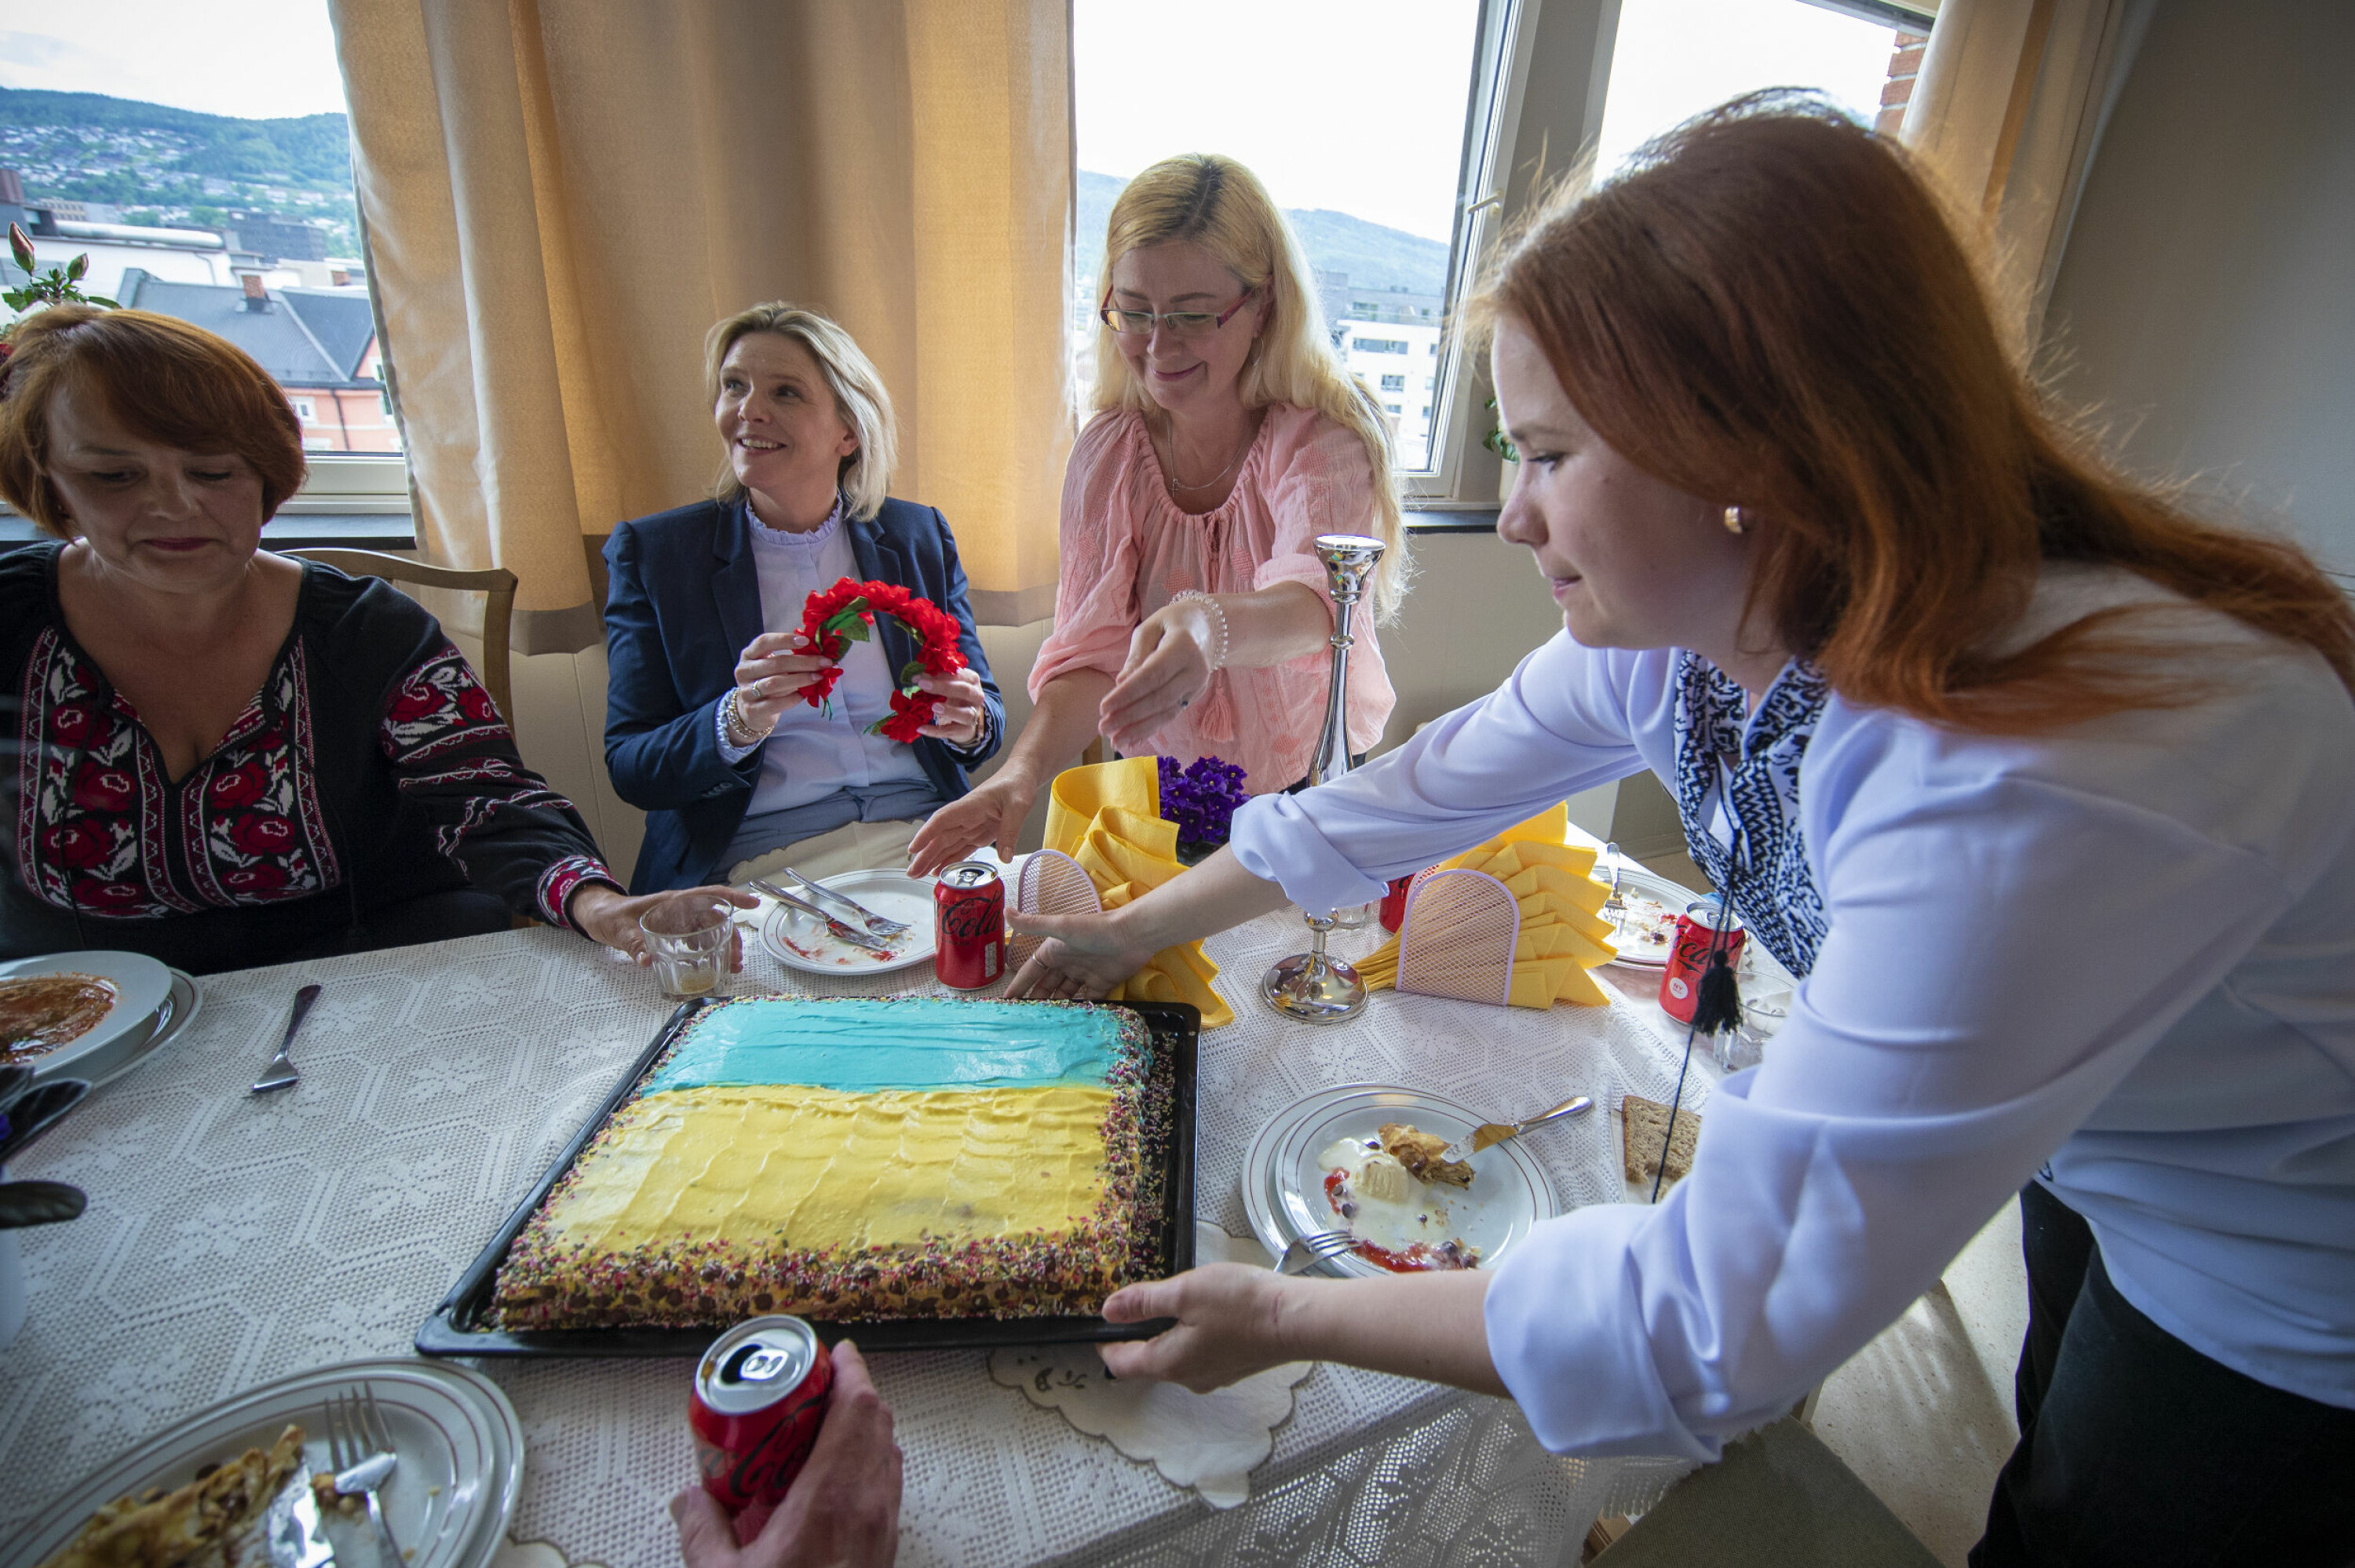 KAKE OG HÅRPRYD: De ukrainske kvinnene hadde stått på for å gi Listhaug en like varm mottagelse som de selv hadde fått, og bød på kake i det ukrainske flaggets farger - og en tradisjonell ukrainsk hårbøyle fikk Frp-lederen også med seg.